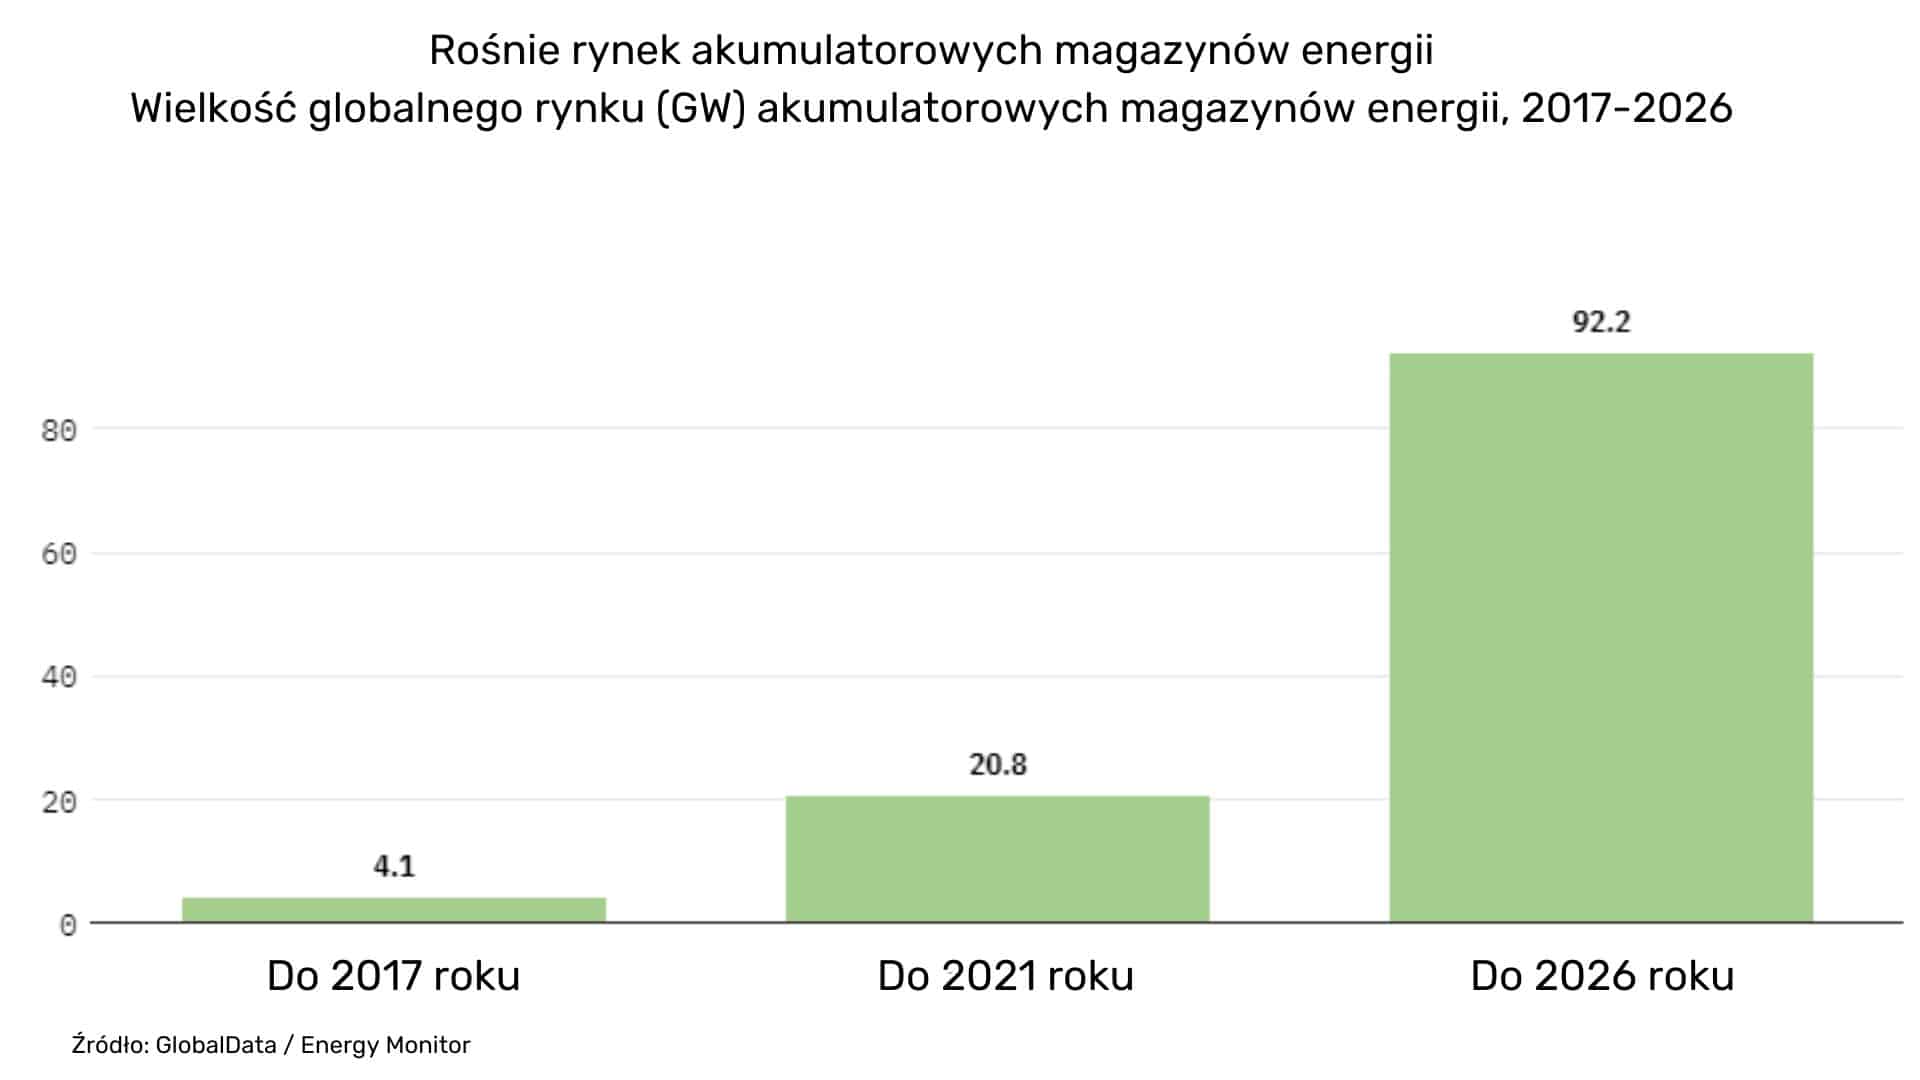 Wielkość globalnego rynku (GW) akumulatorowych magazynów energii, 2017-2026